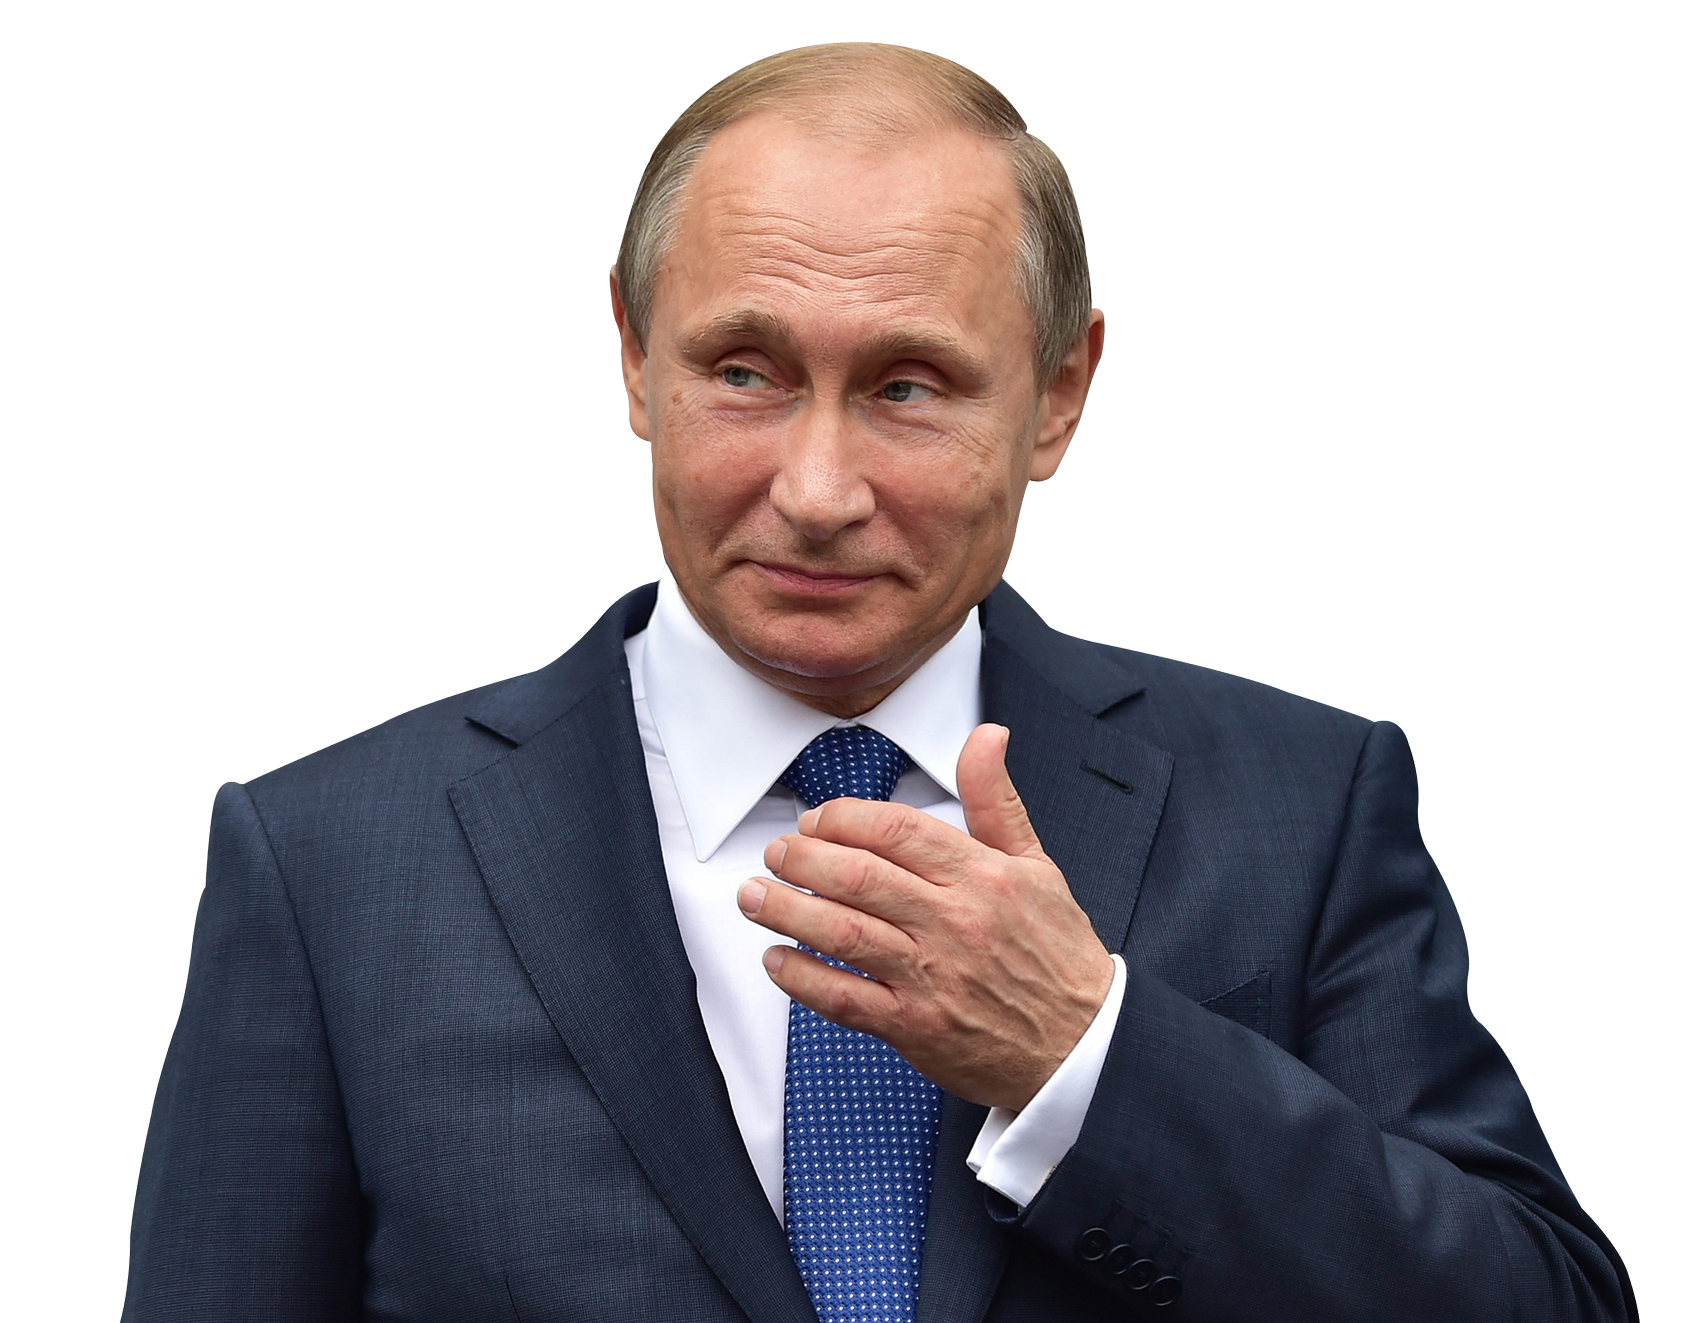 الرئيس الروسي فلاديمير بوتين Png صور شفافة ، صور ، صور Png Arts